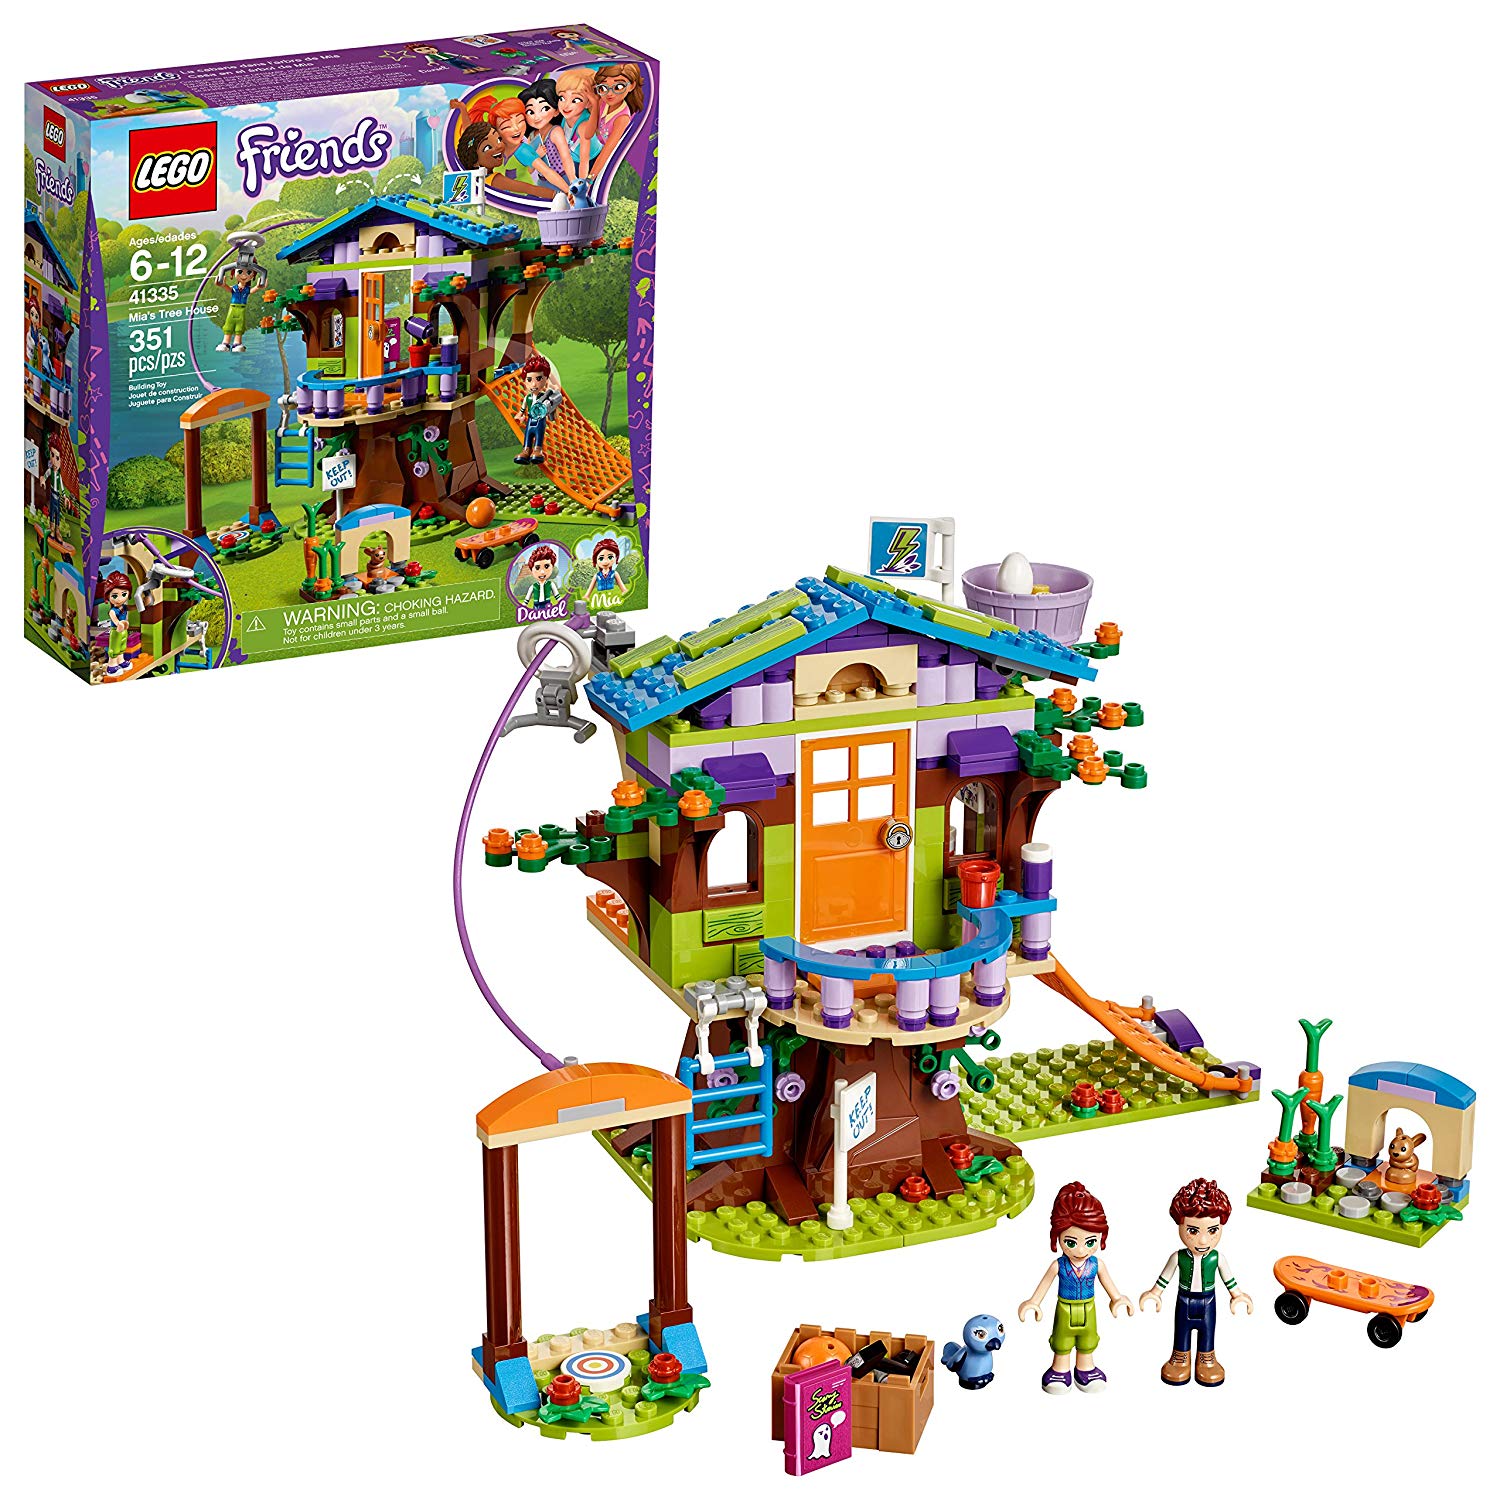 Lego Friends Mias Tree House Building Set